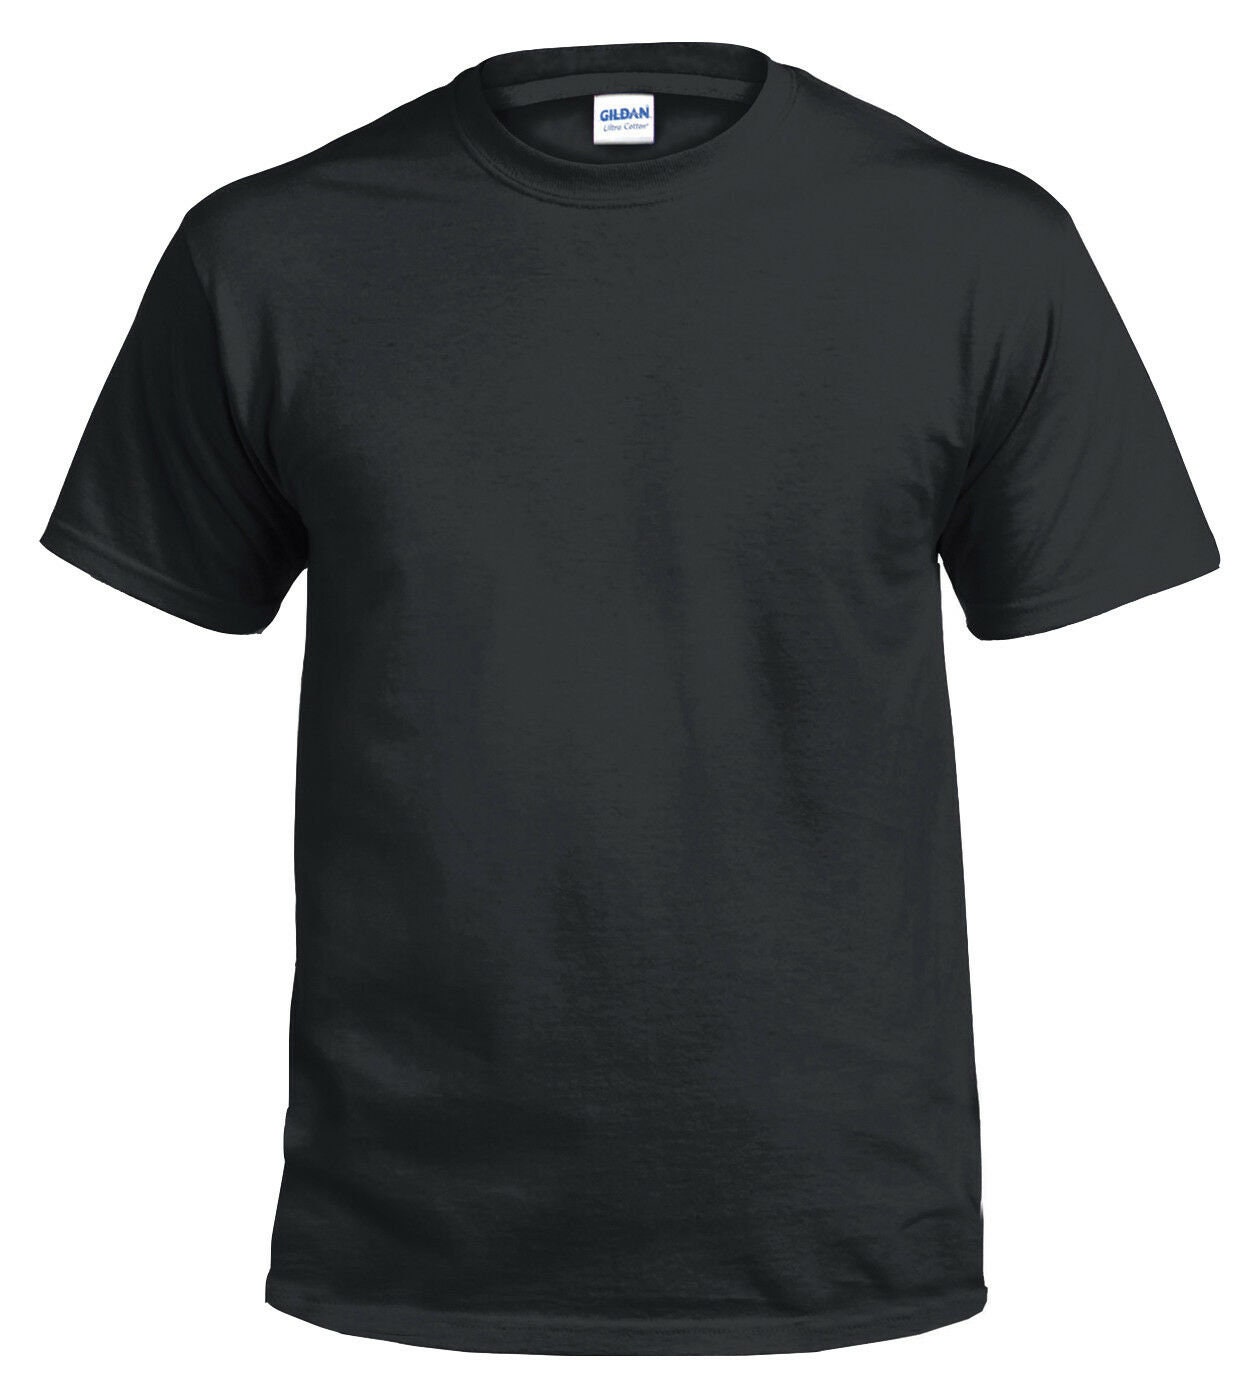 Plain black tee shirt